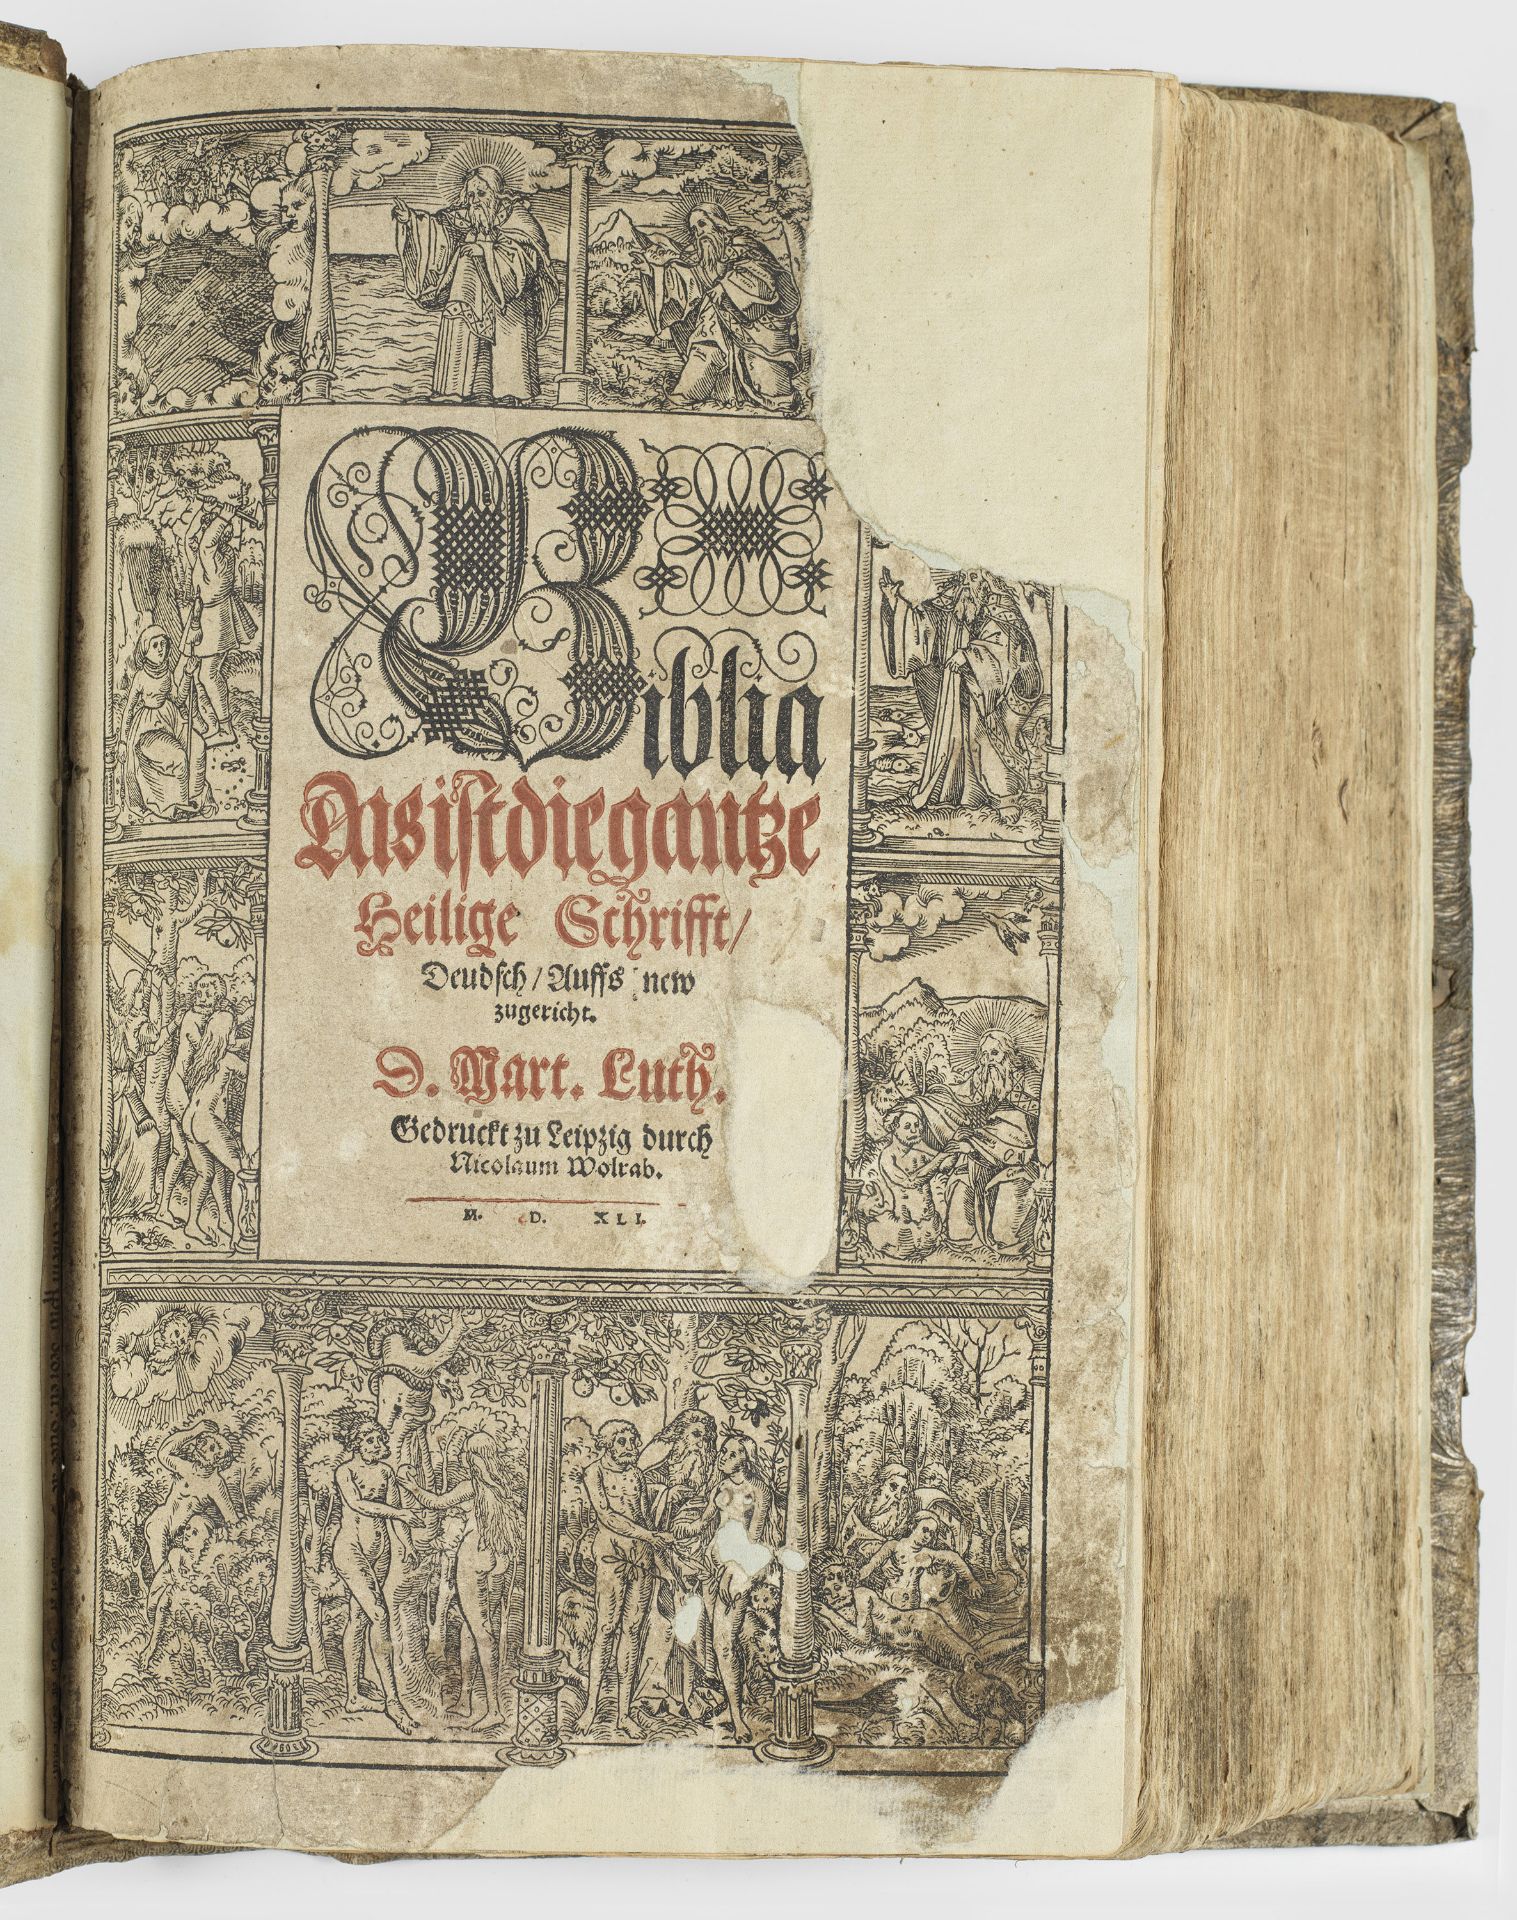 Rare Luther-Bibel mit Holzschnitten von Lucas Cranach d. J. - Bild 3 aus 3